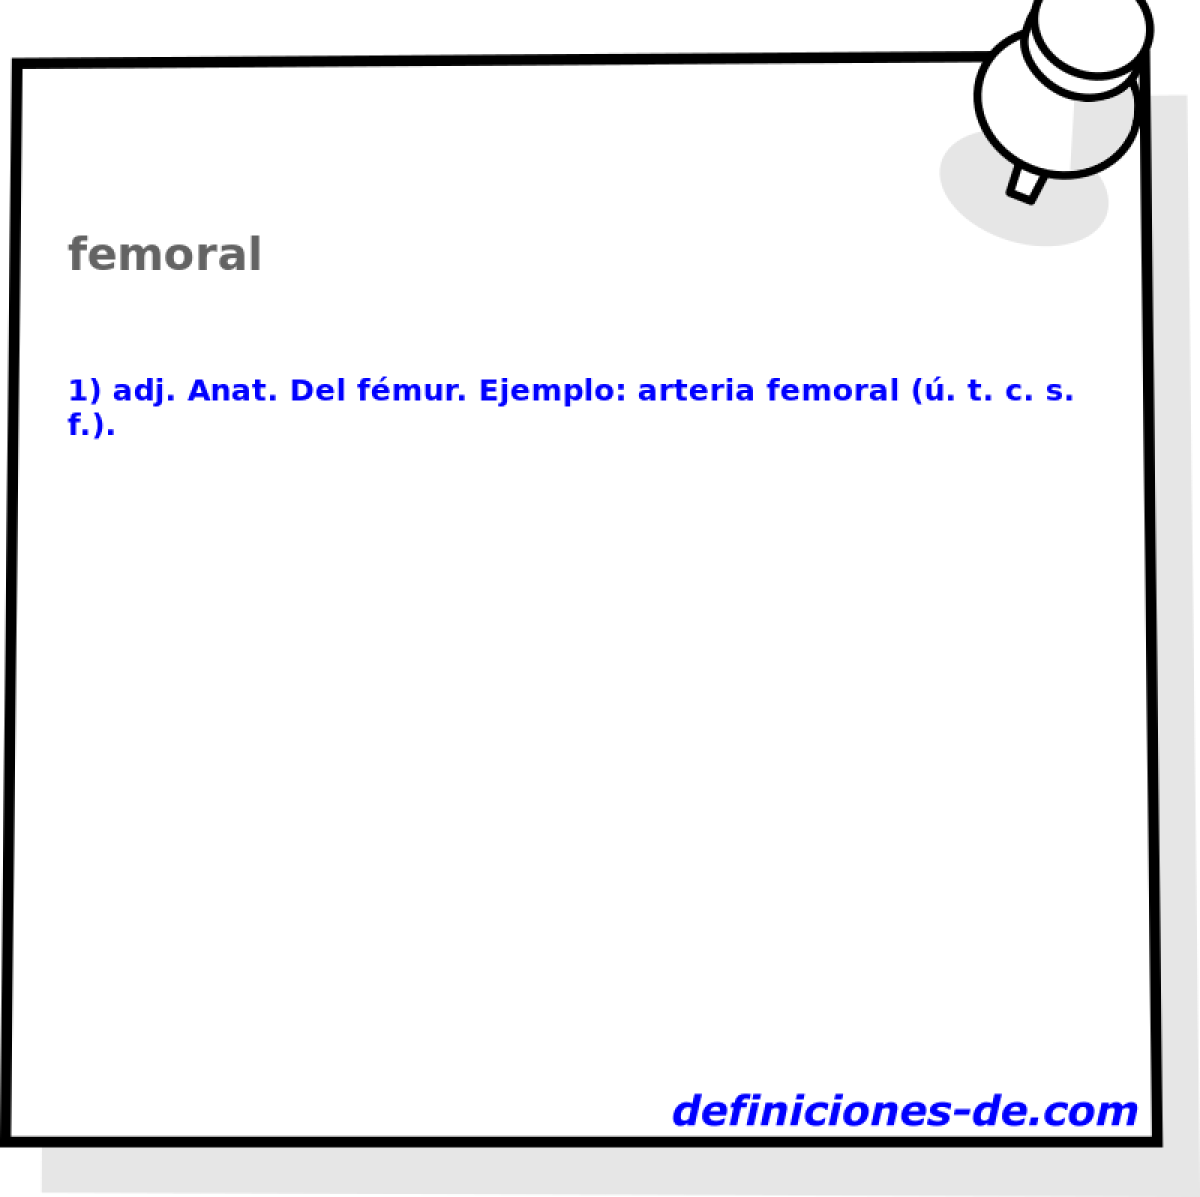 femoral 